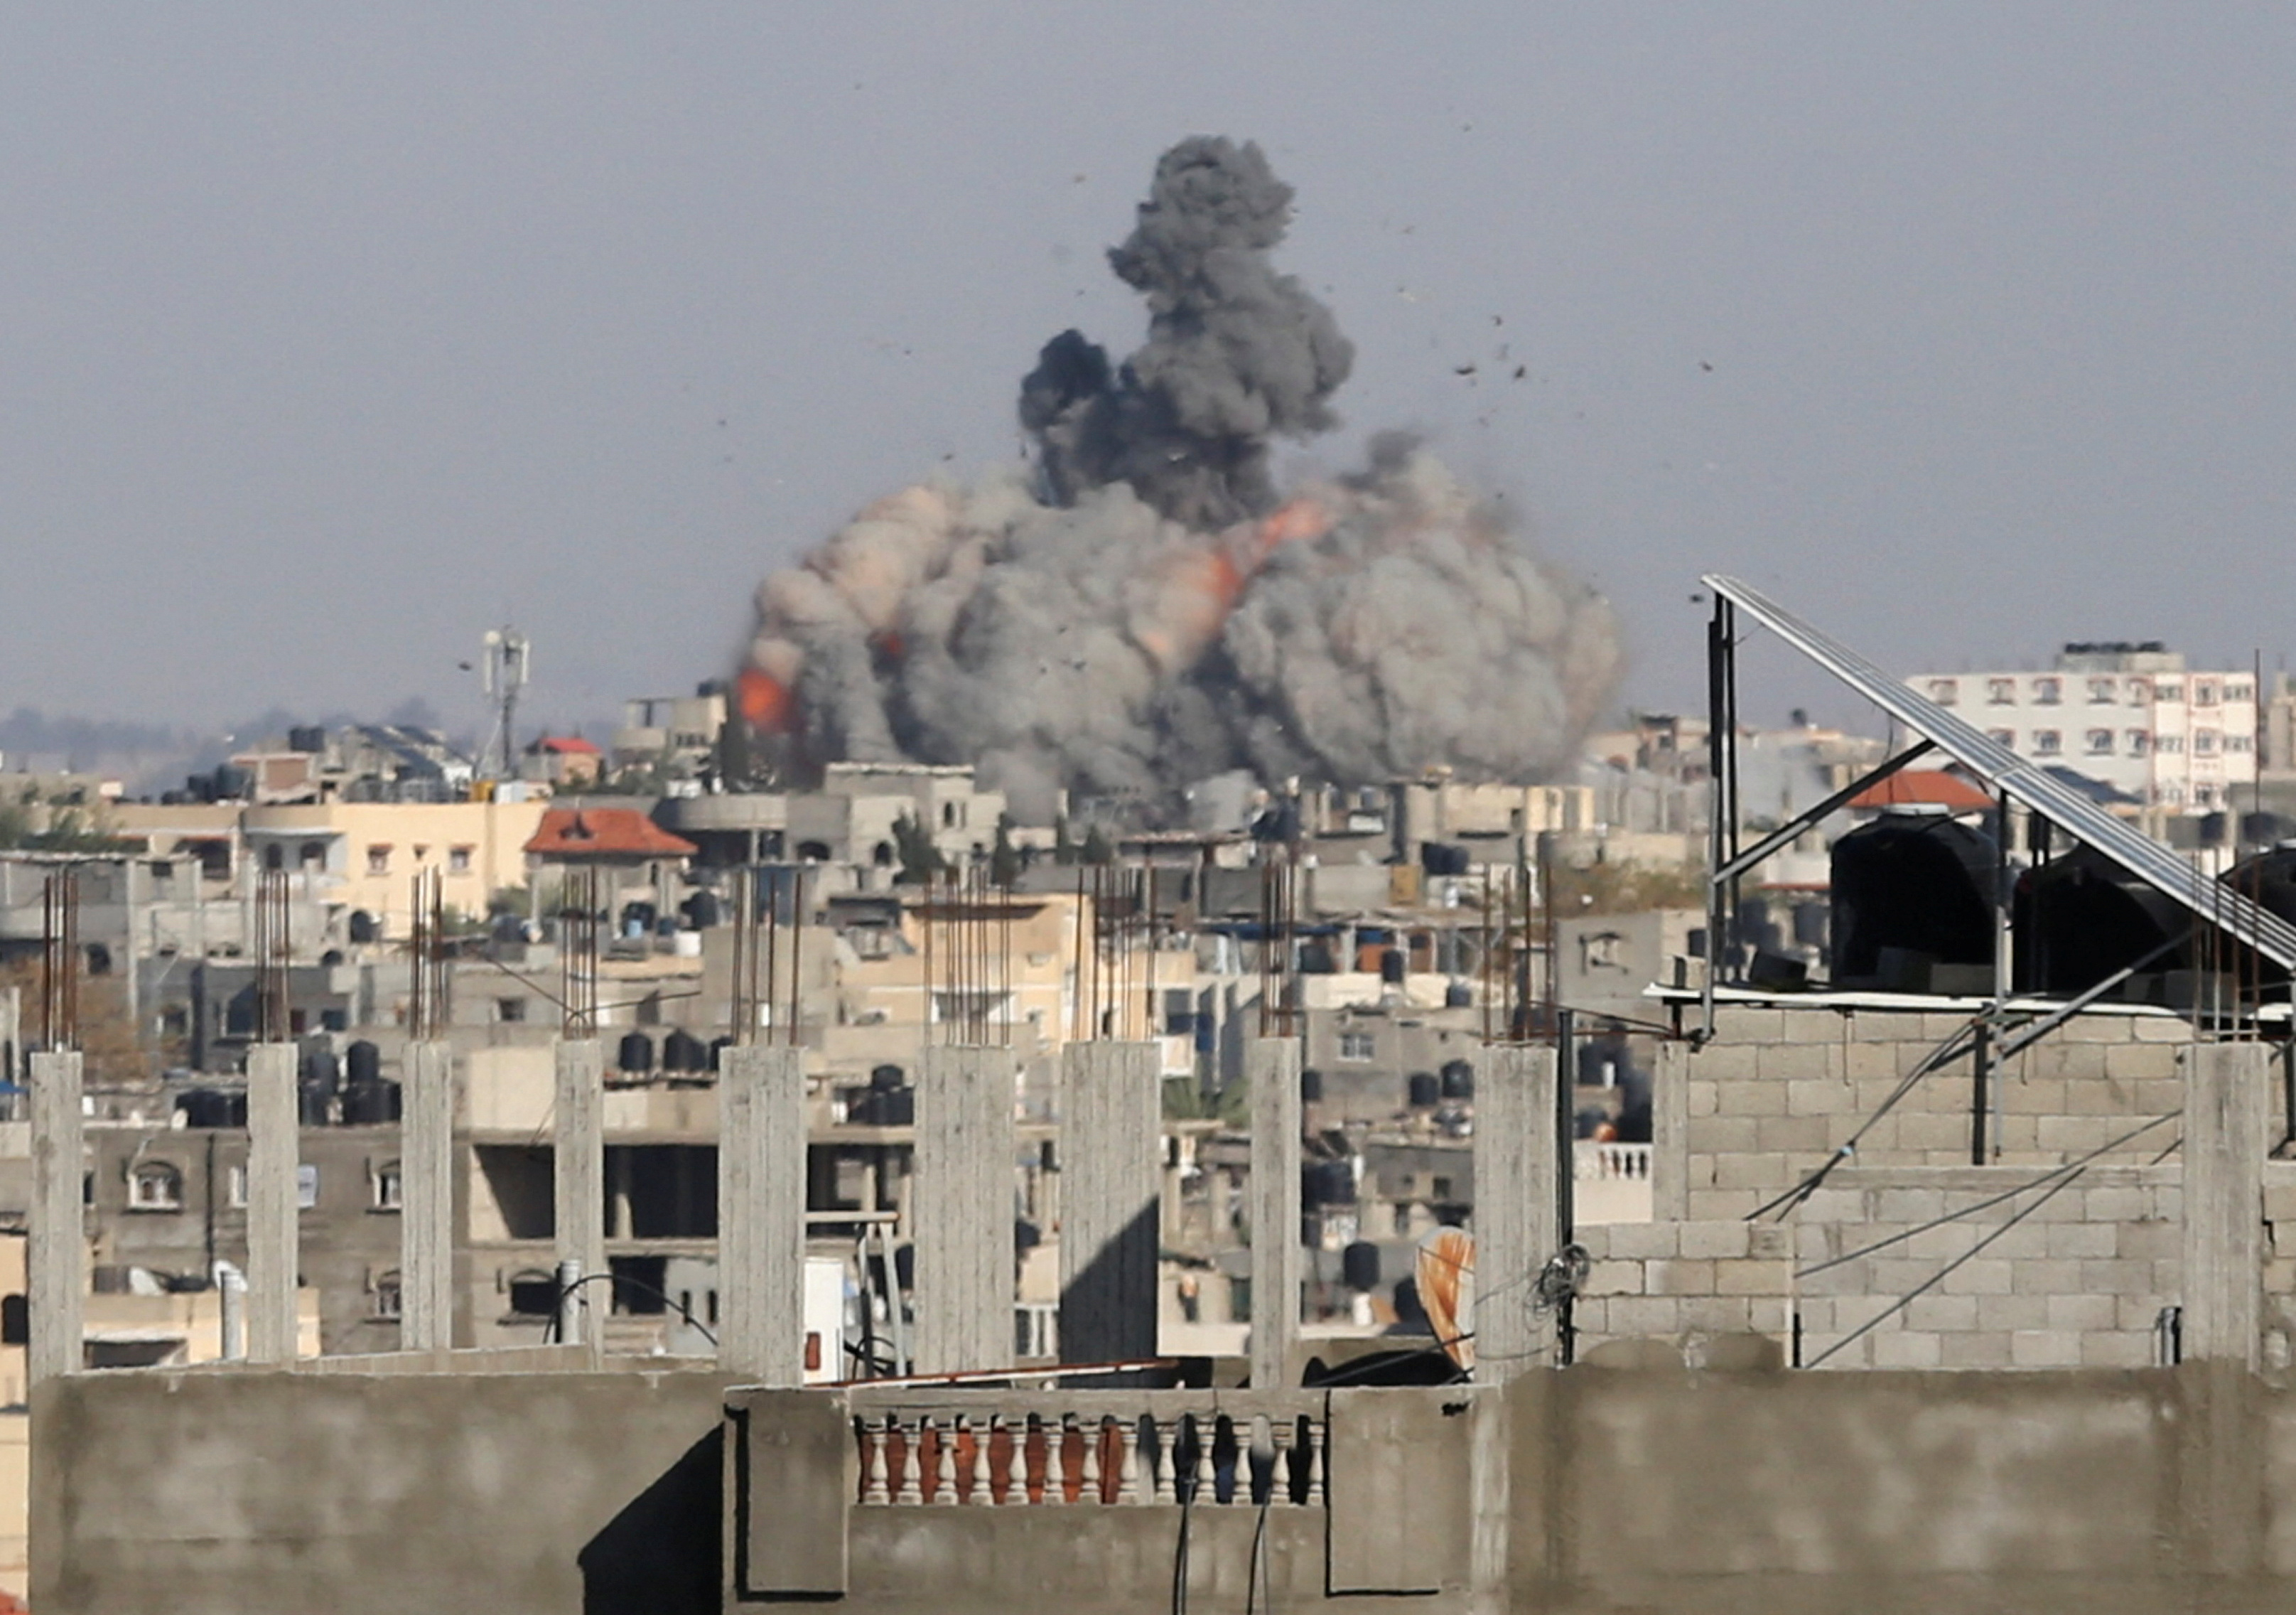 6일(현지시간) 이스라엘군이 팔레스타인 무장 정파 하마스의 최후 보루로 여겨지는 가자지구 최남단 라파에서 공습한 이후 검은 연기가 하늘로 치솟고 있다. 로이터 연합뉴스